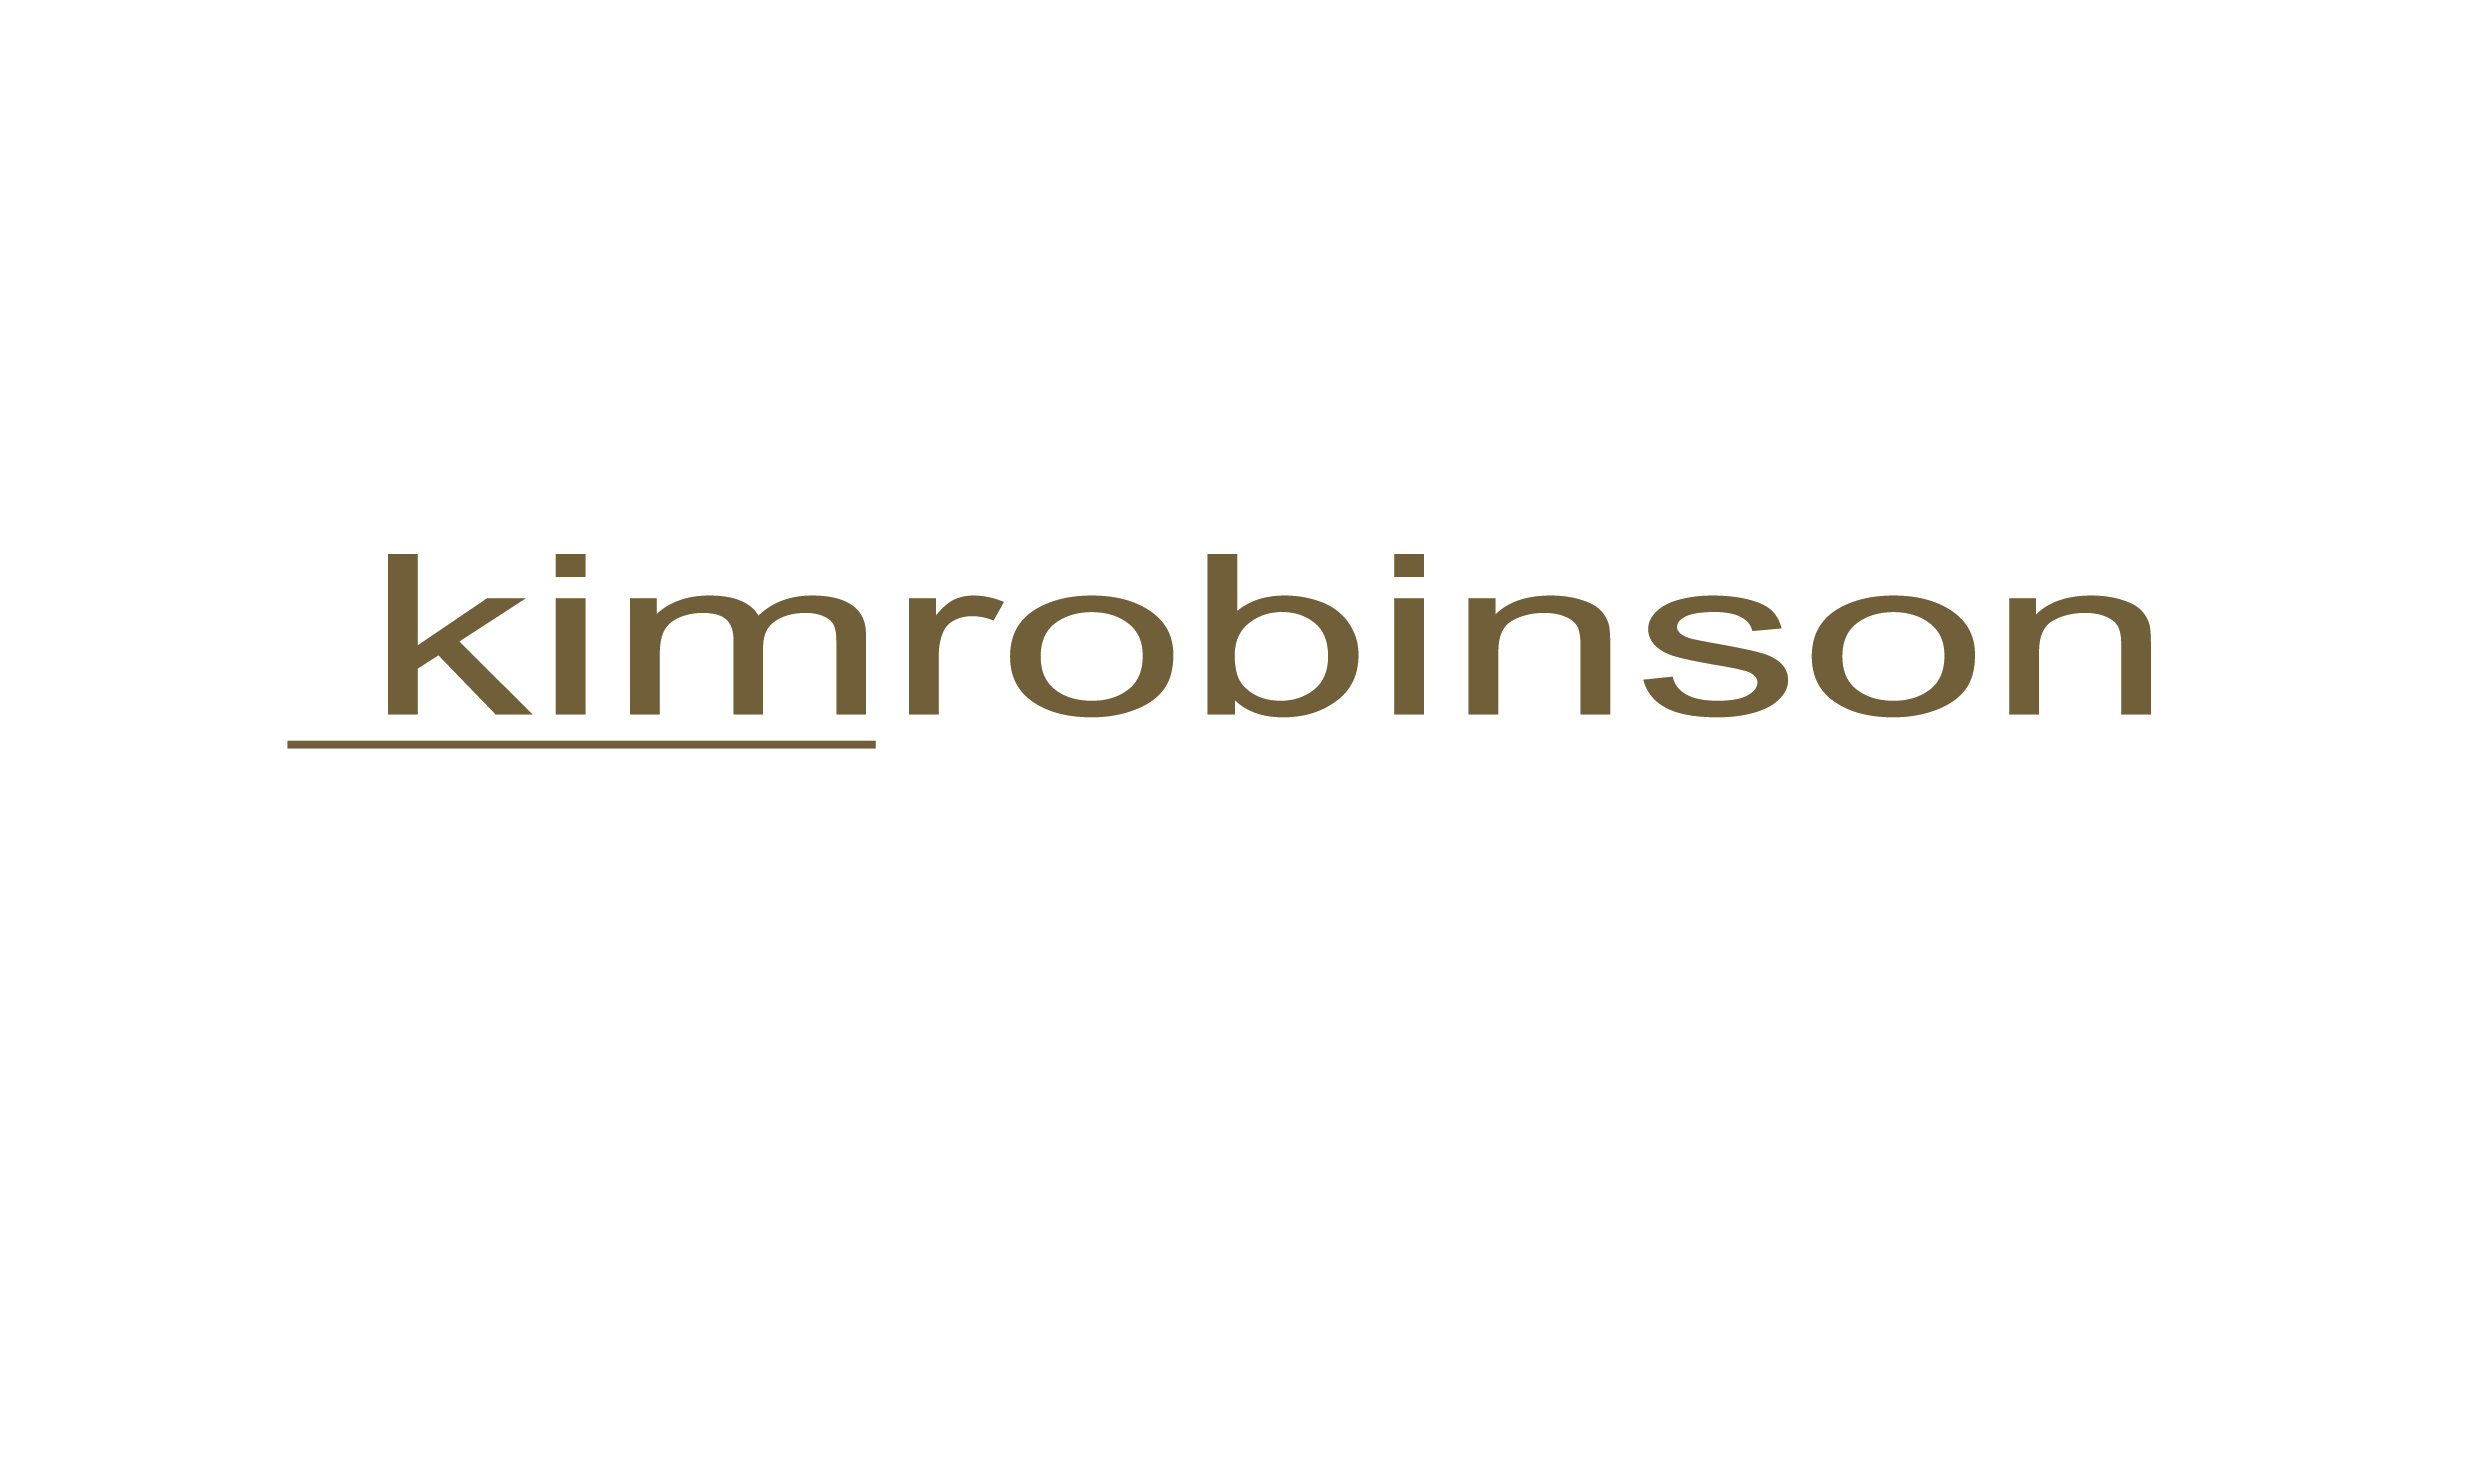 kimrobinson logo on white